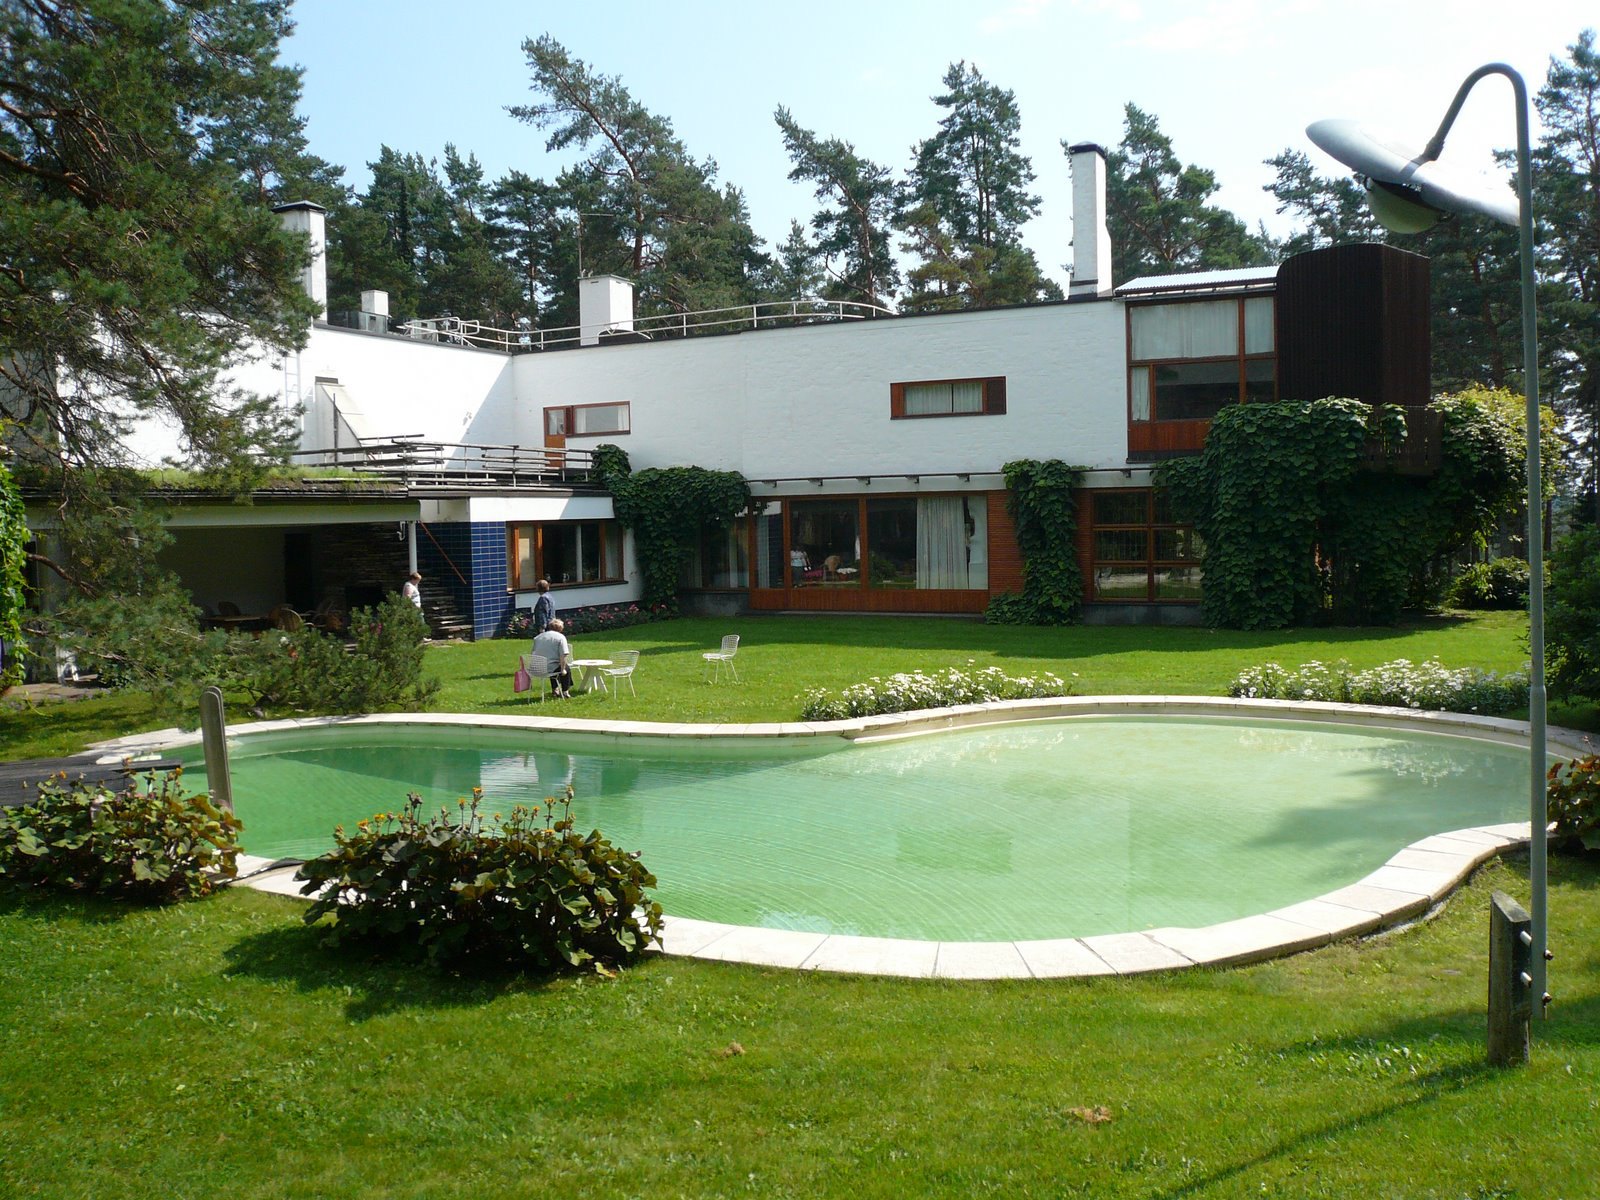 Villa Mairea by Alvar Aalto